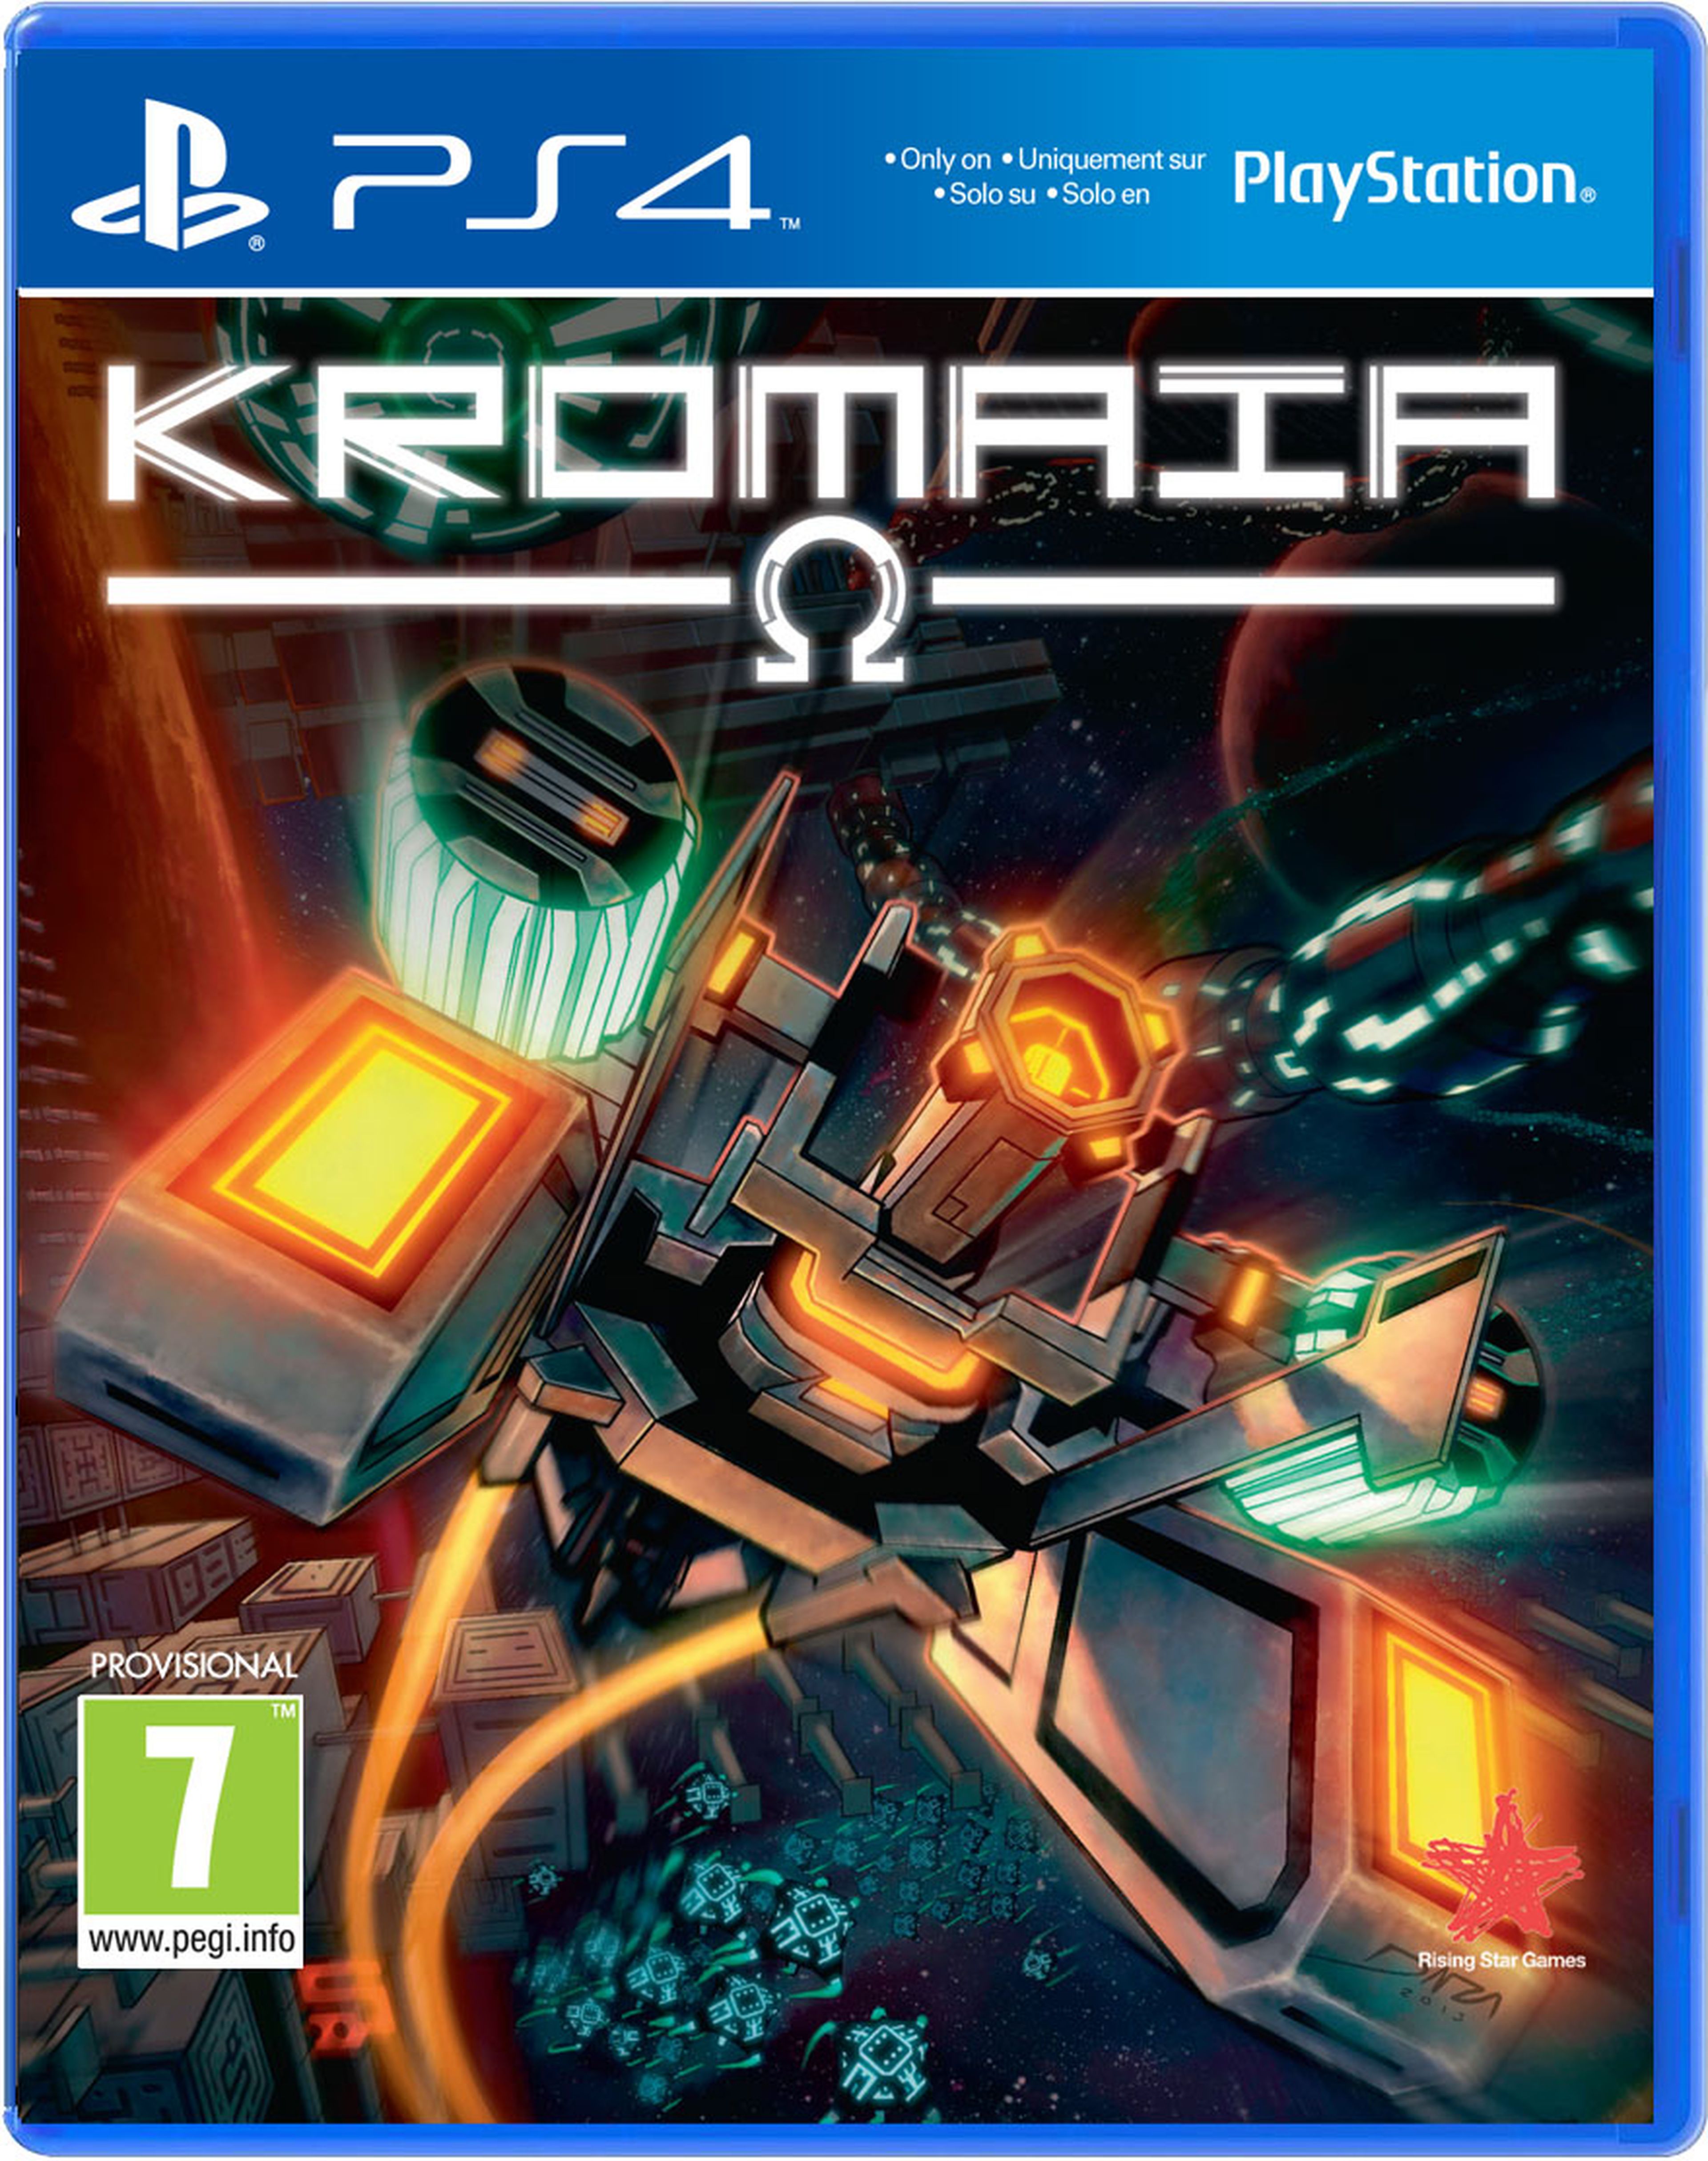 Kromaia Ω llegará en formato físico en exclusiva para PlayStation 4 a partir del 13 de noviembre.